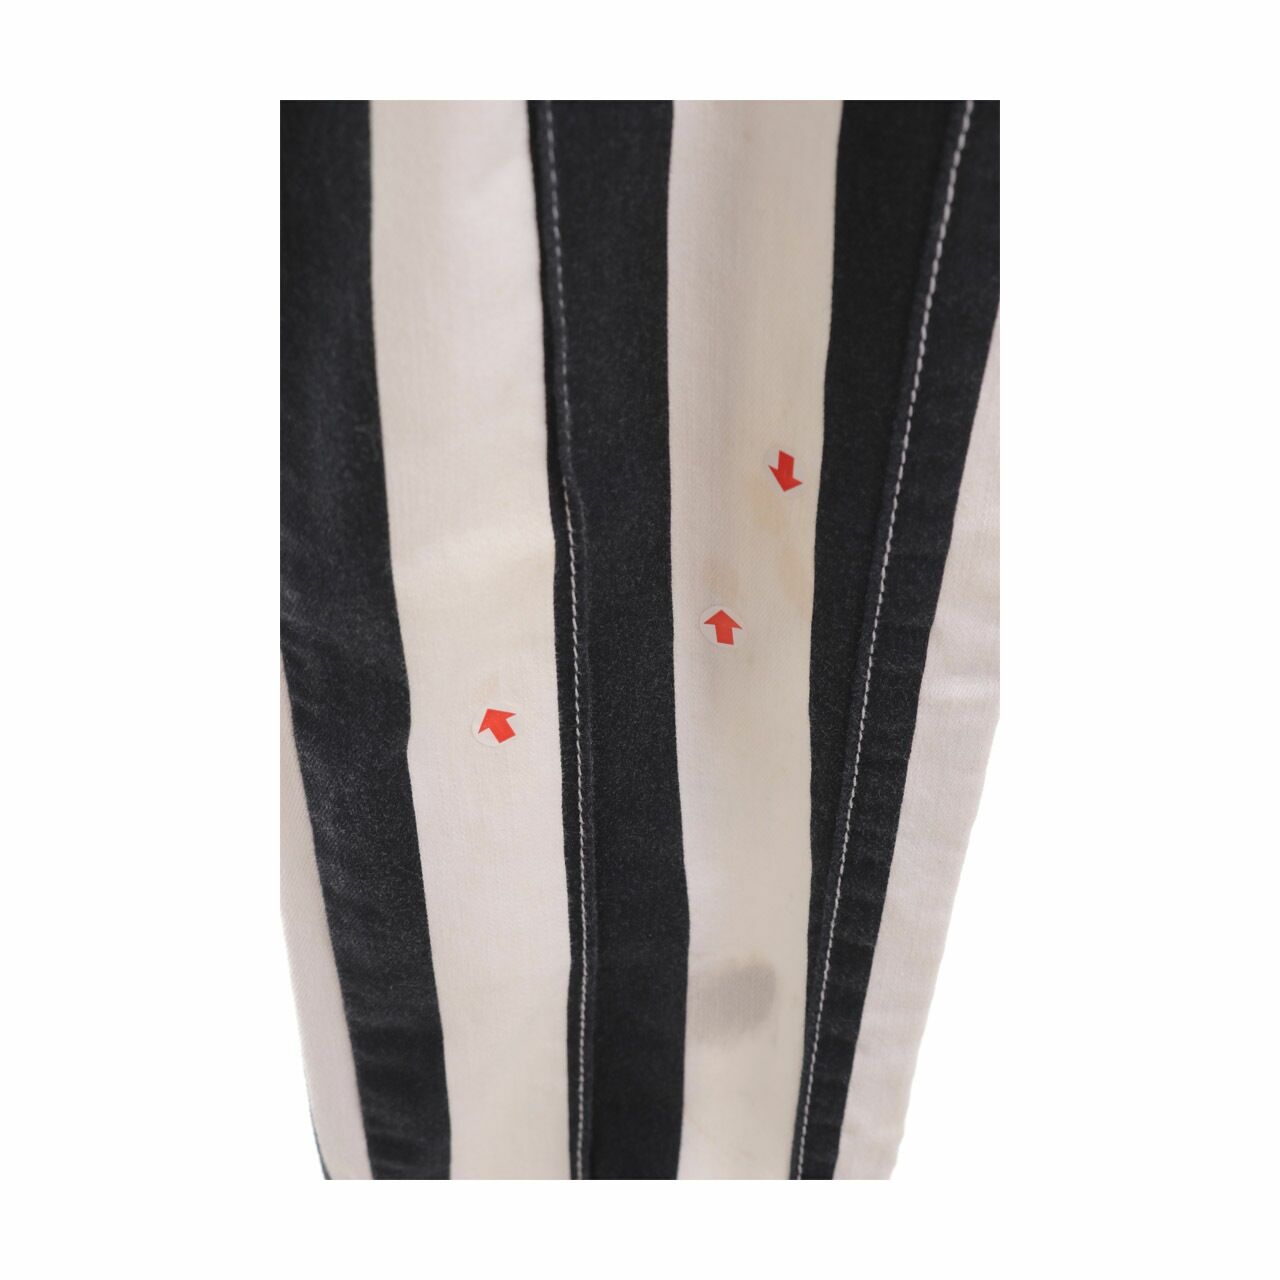 Balmain X H&M Black & White Stripes Long Pants